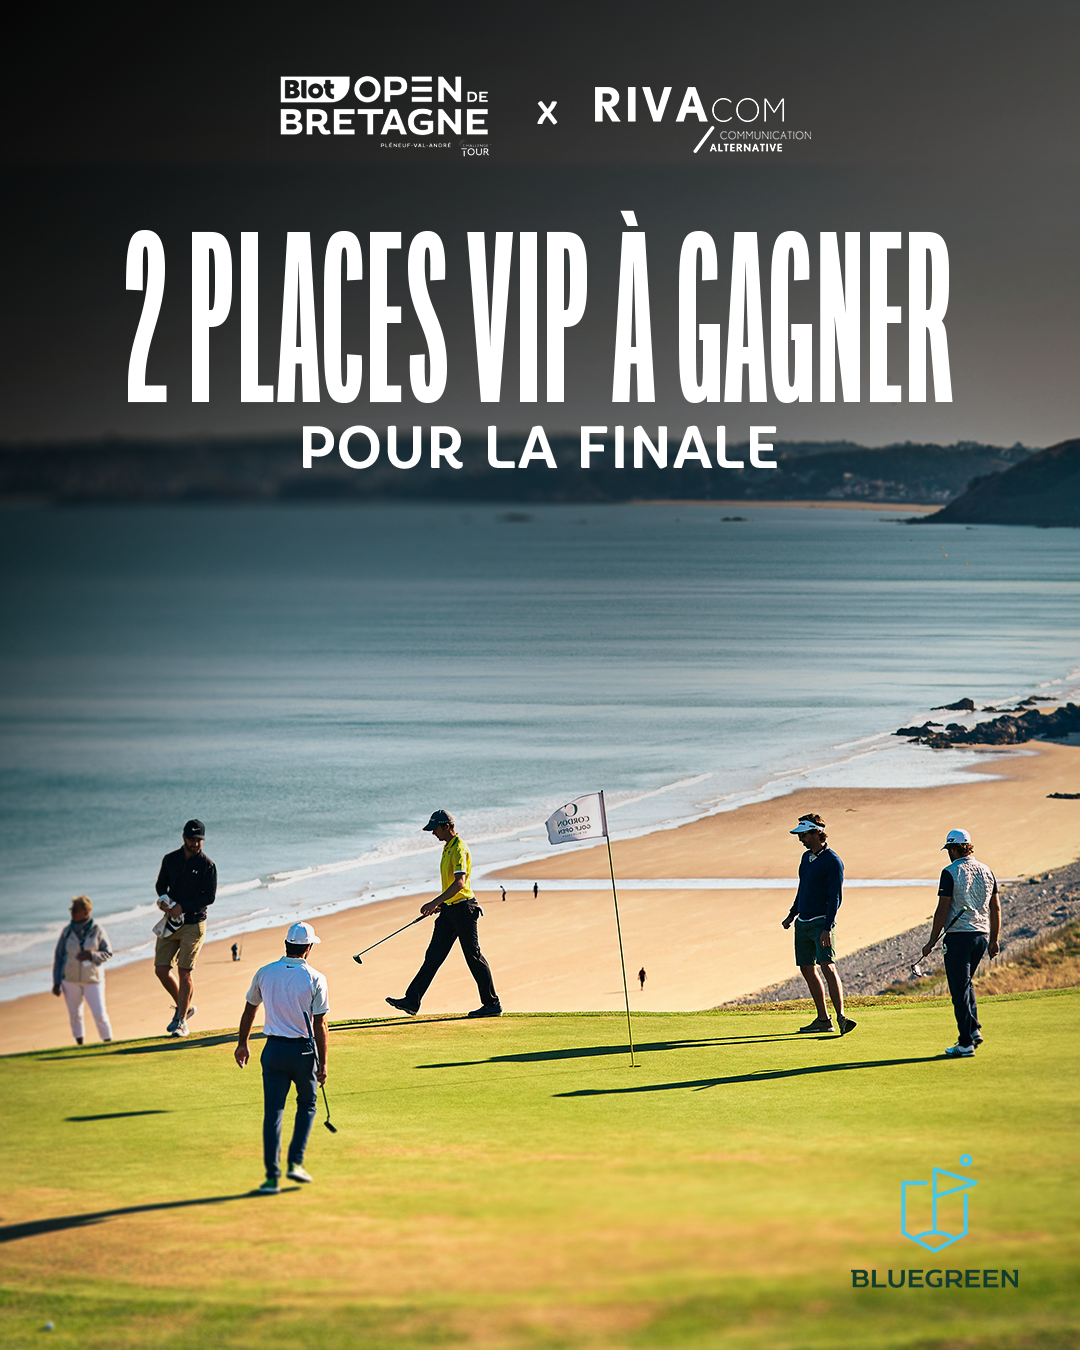 Lire la suite à propos de l’article Jeu-concours et nouveau parrain pour la 15e édition du Blot Open de Bretagne de golf !